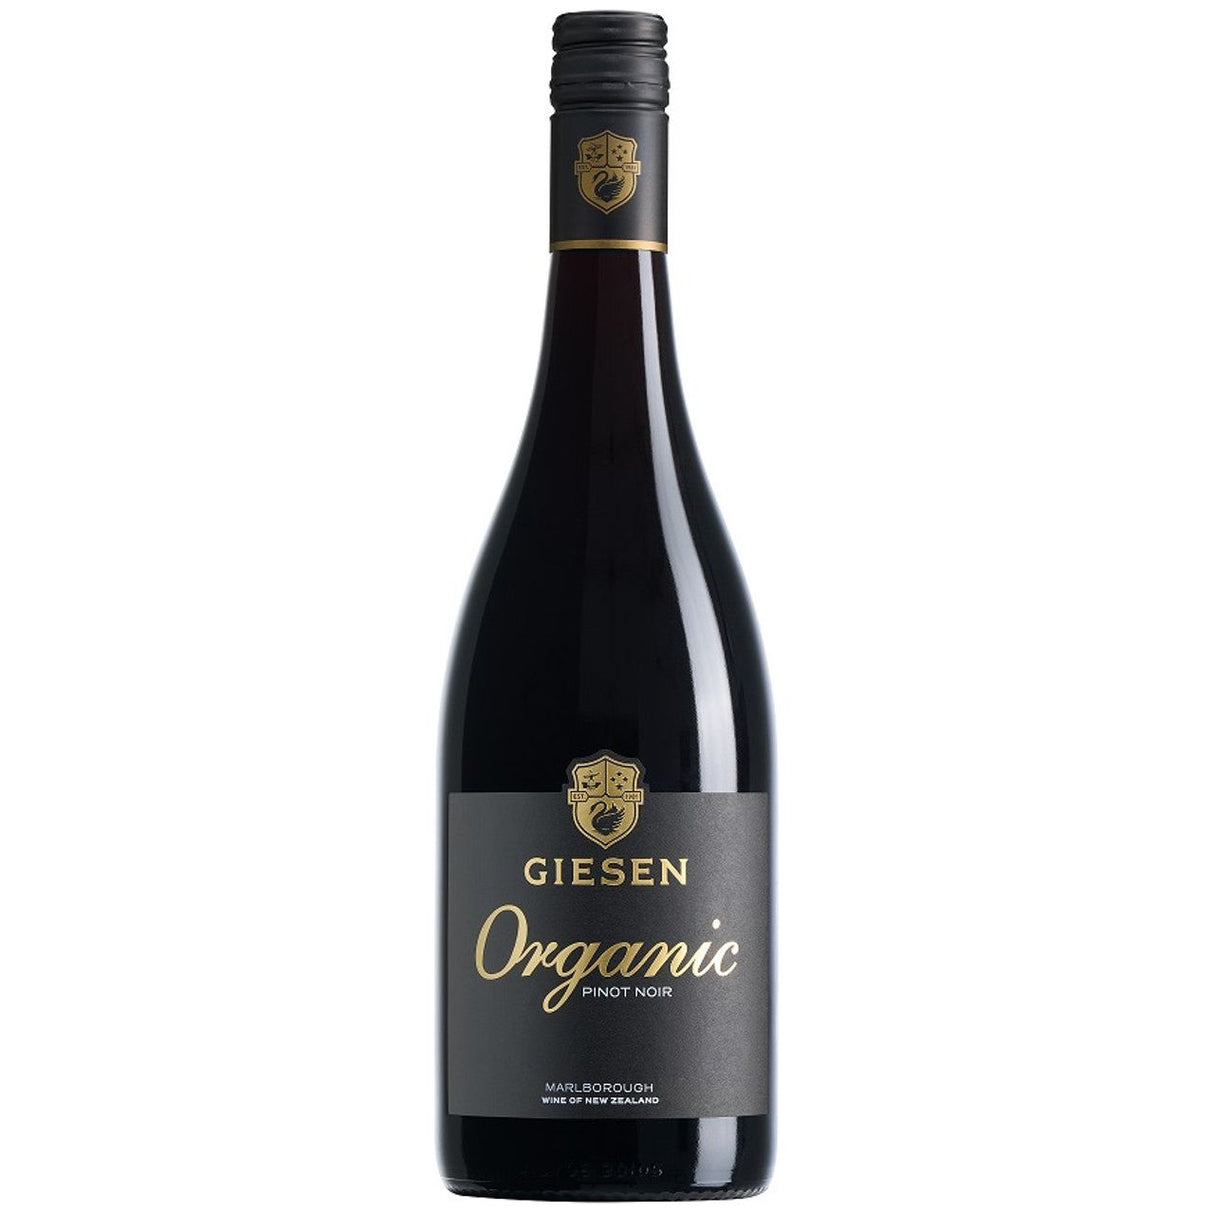 Giesen Organic Pinot Noir,  Marlborough 2019 (12 bottles)